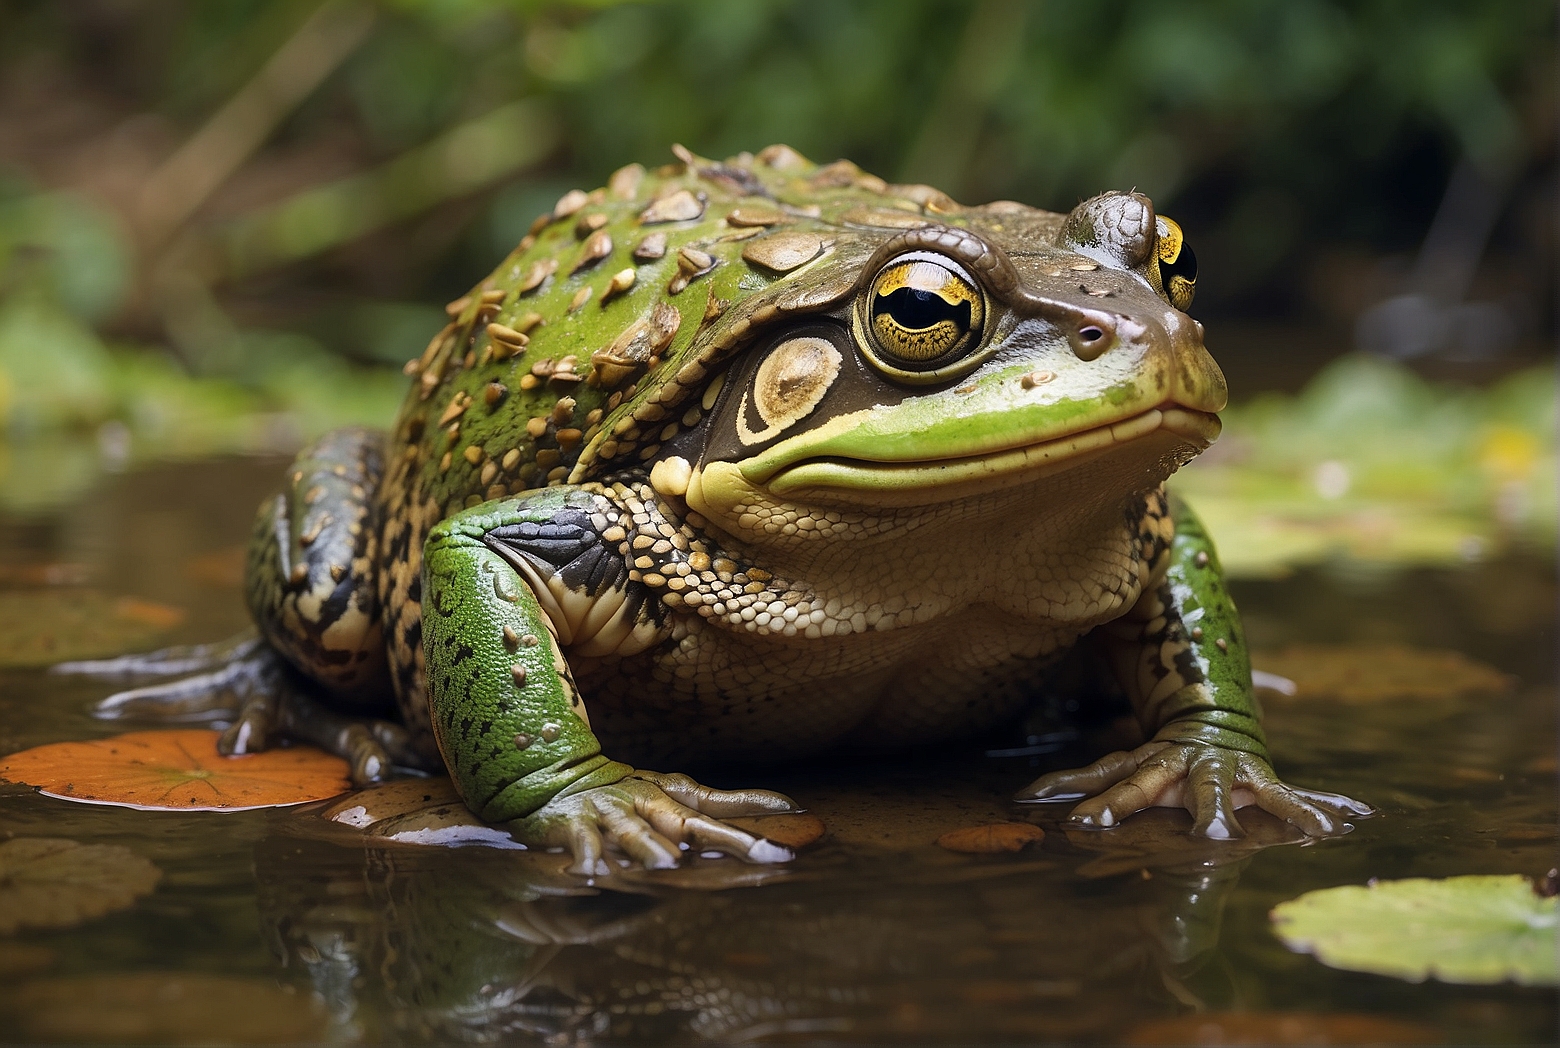 The Lifespan of a Bullfrog